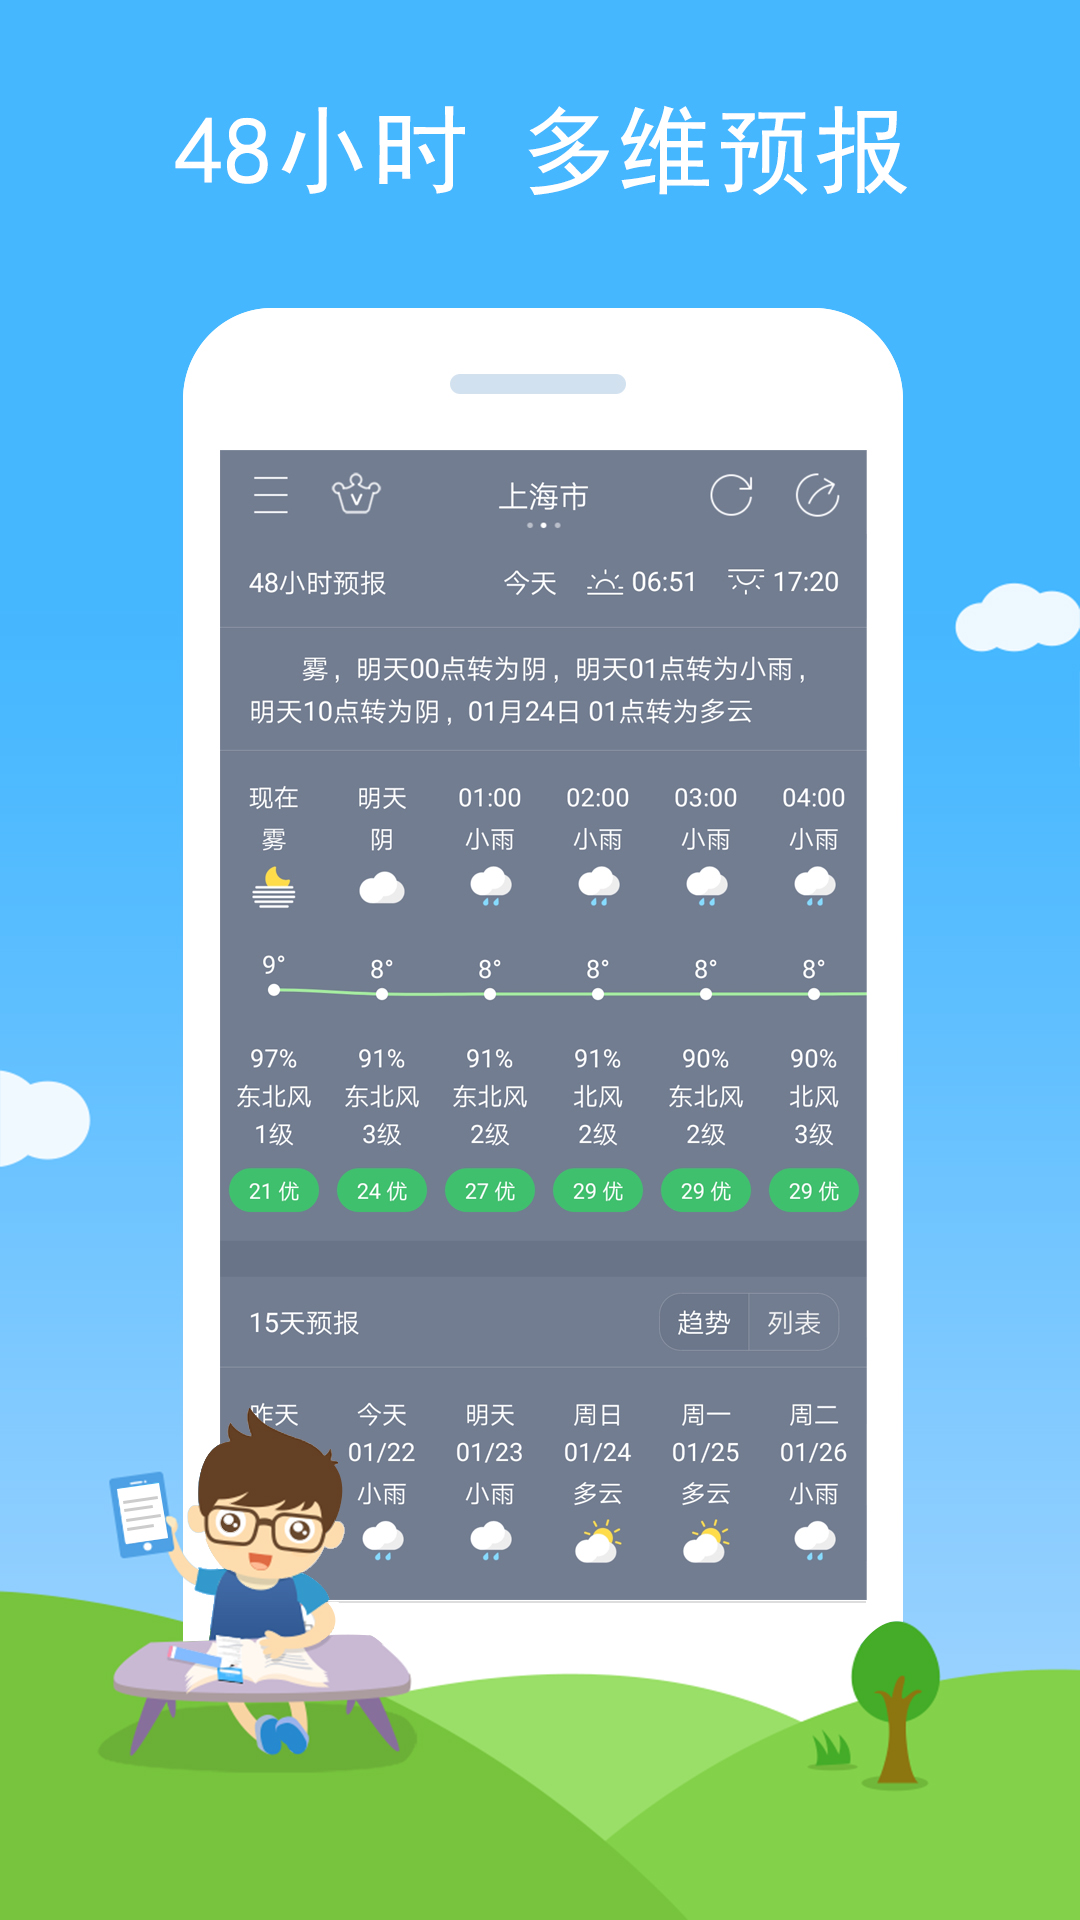 七彩天气预报最新版本全面升级语音播报图1: